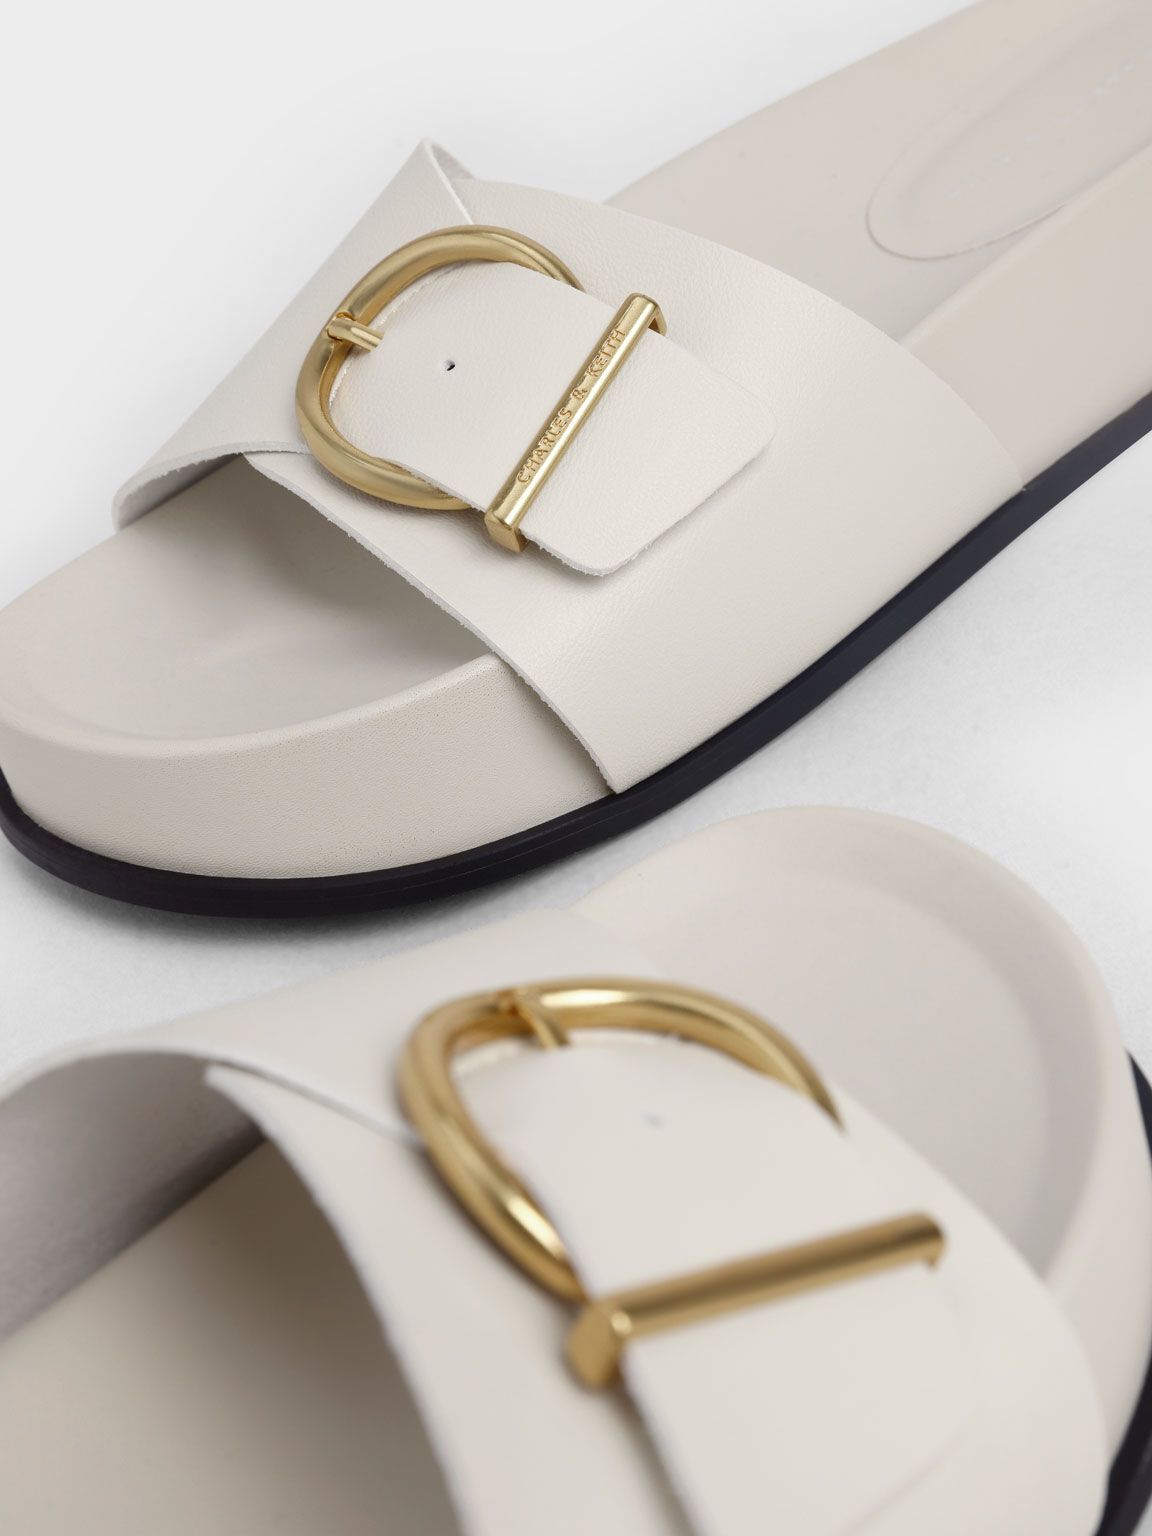 Inuovo flatform sandal metallic silver singback size 37(6,5) | Flatform  sandals, Sandals, Metallic silver